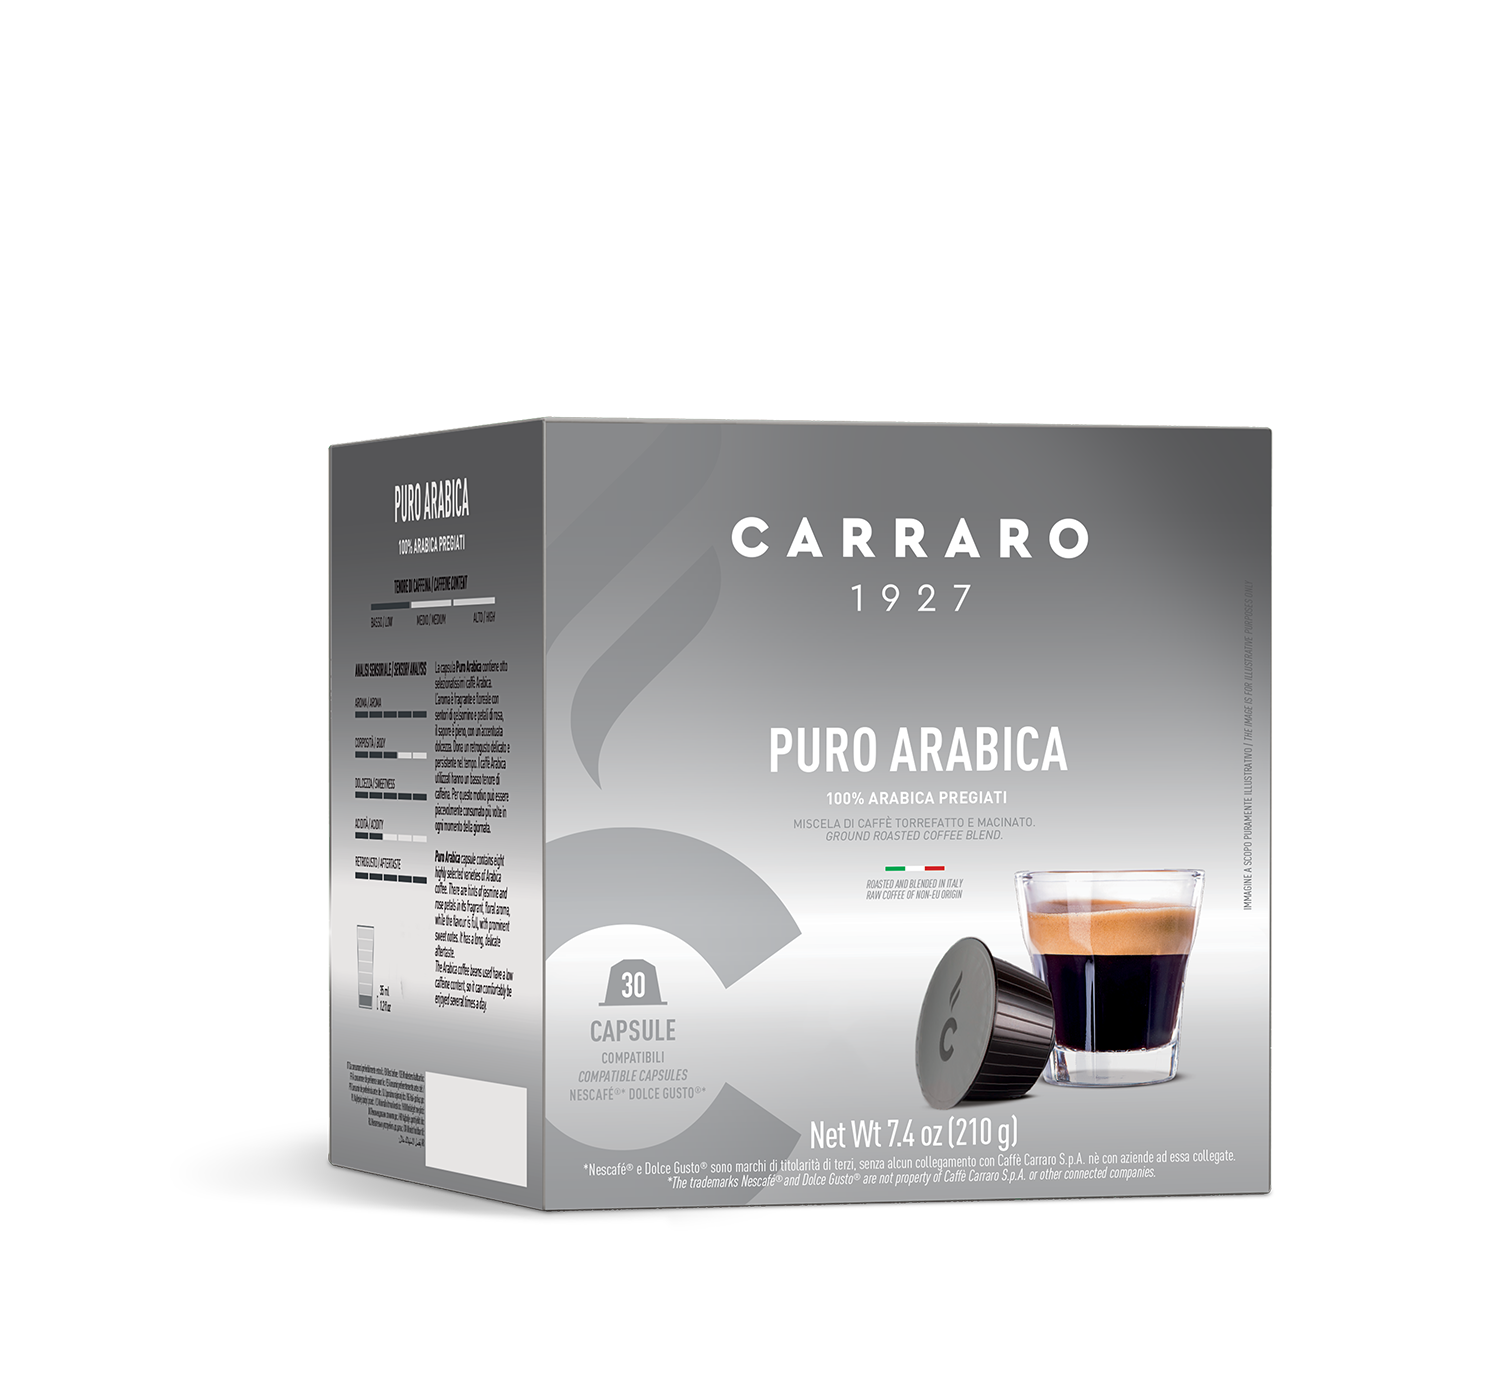 Capsules - Puro Arabica – 30 Dolce Gusto®* compatible capsules - Shop online Caffè Carraro